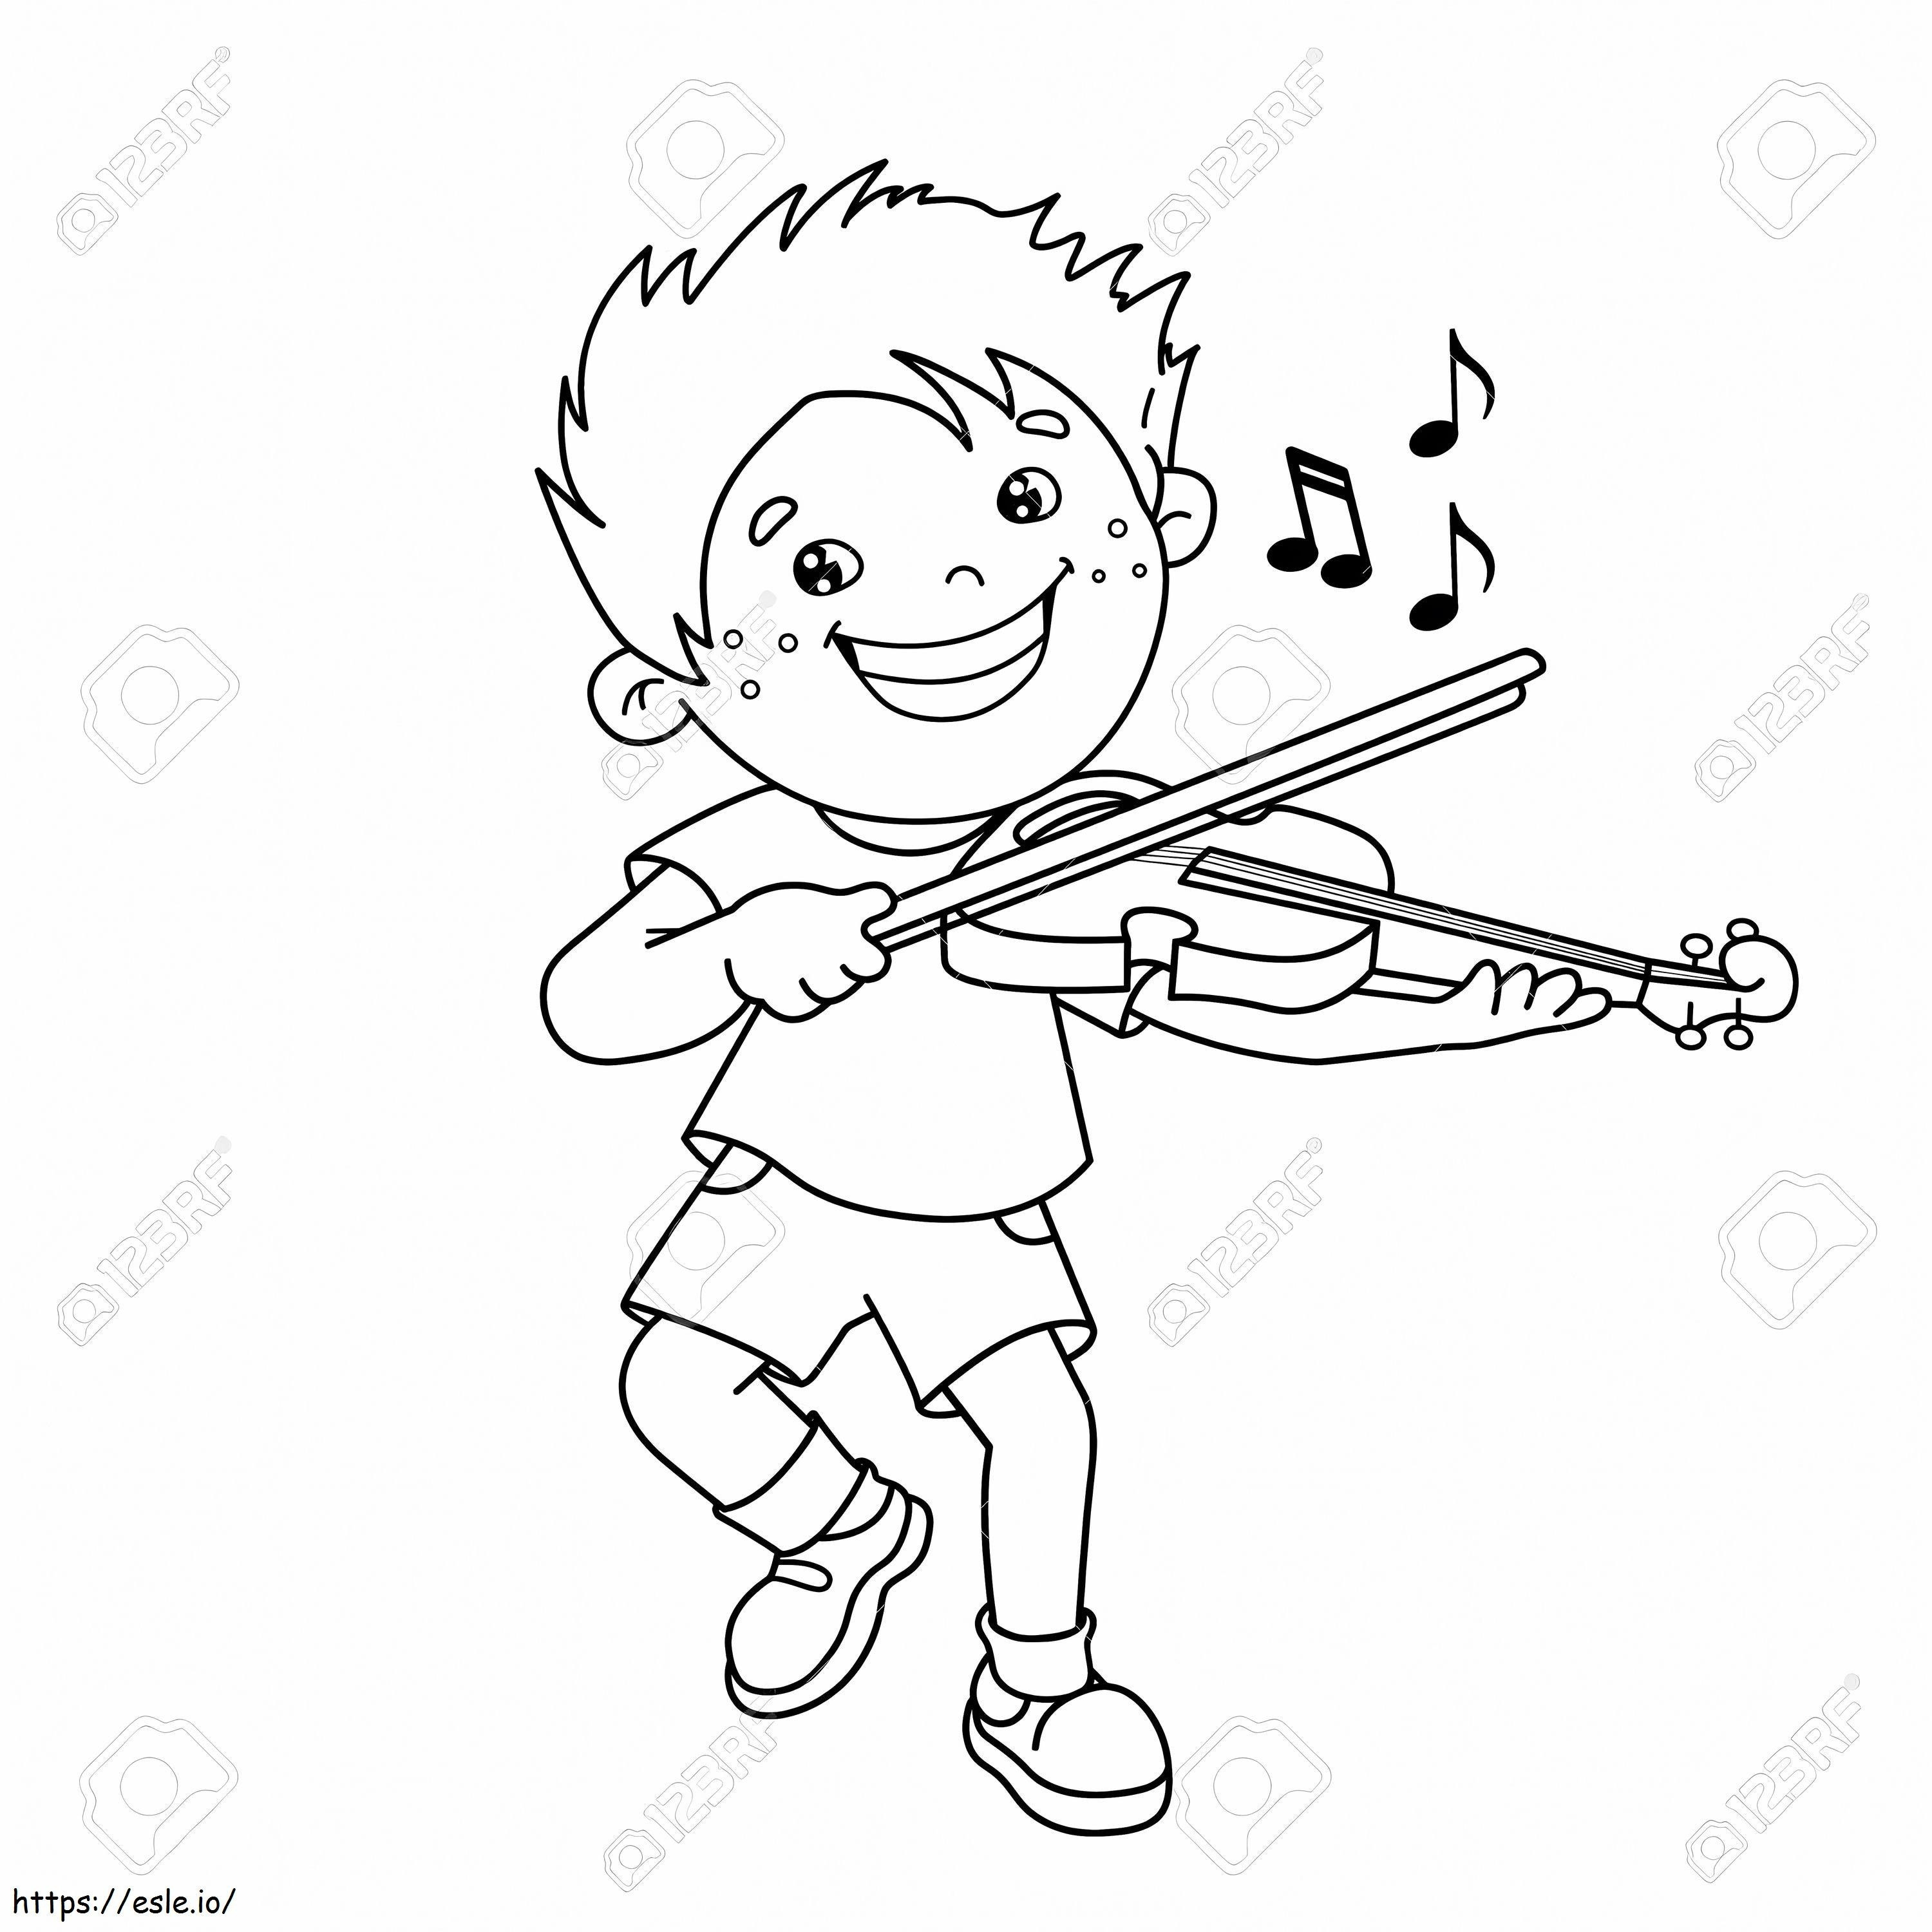 1543026113 75069501 Profilo del ragazzo cartone animato che suona il violino con strumenti musicali Libro da colorare per da colorare